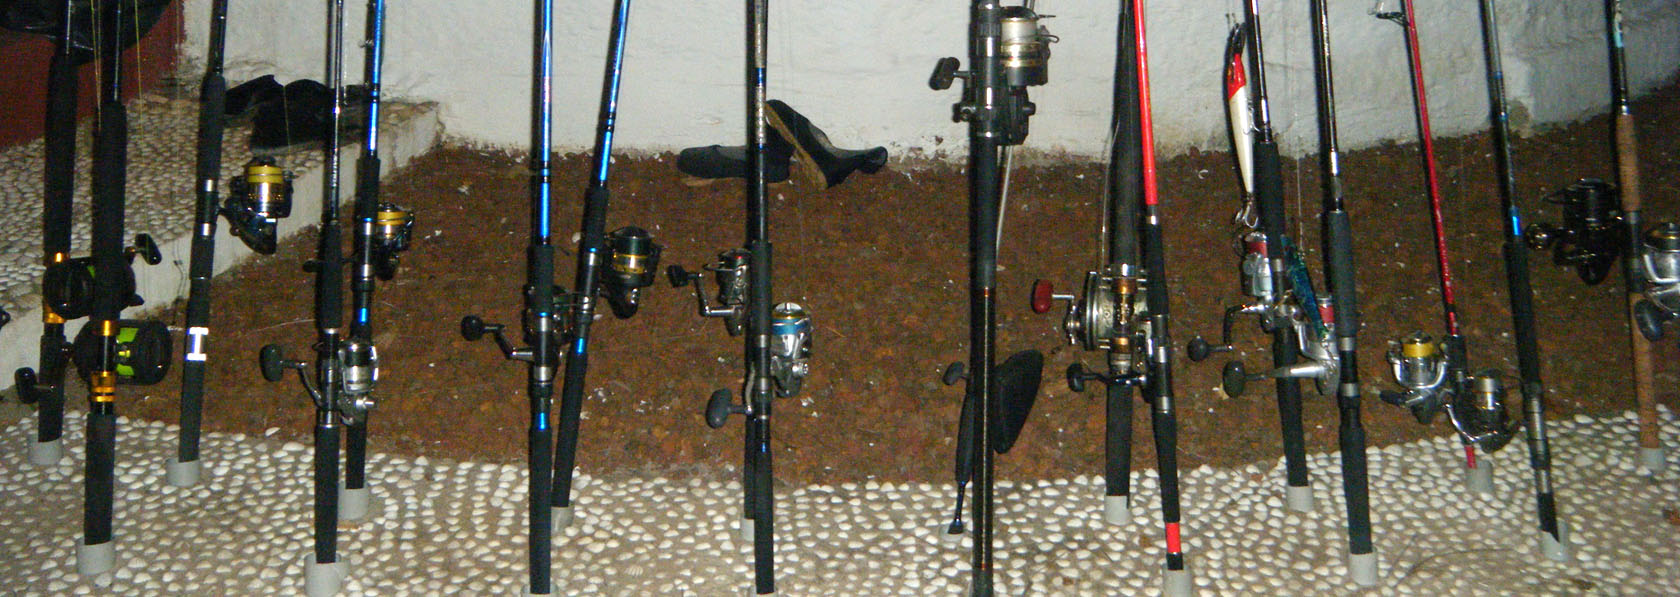 Canas de lance para a pesca desportiva nos bijagós